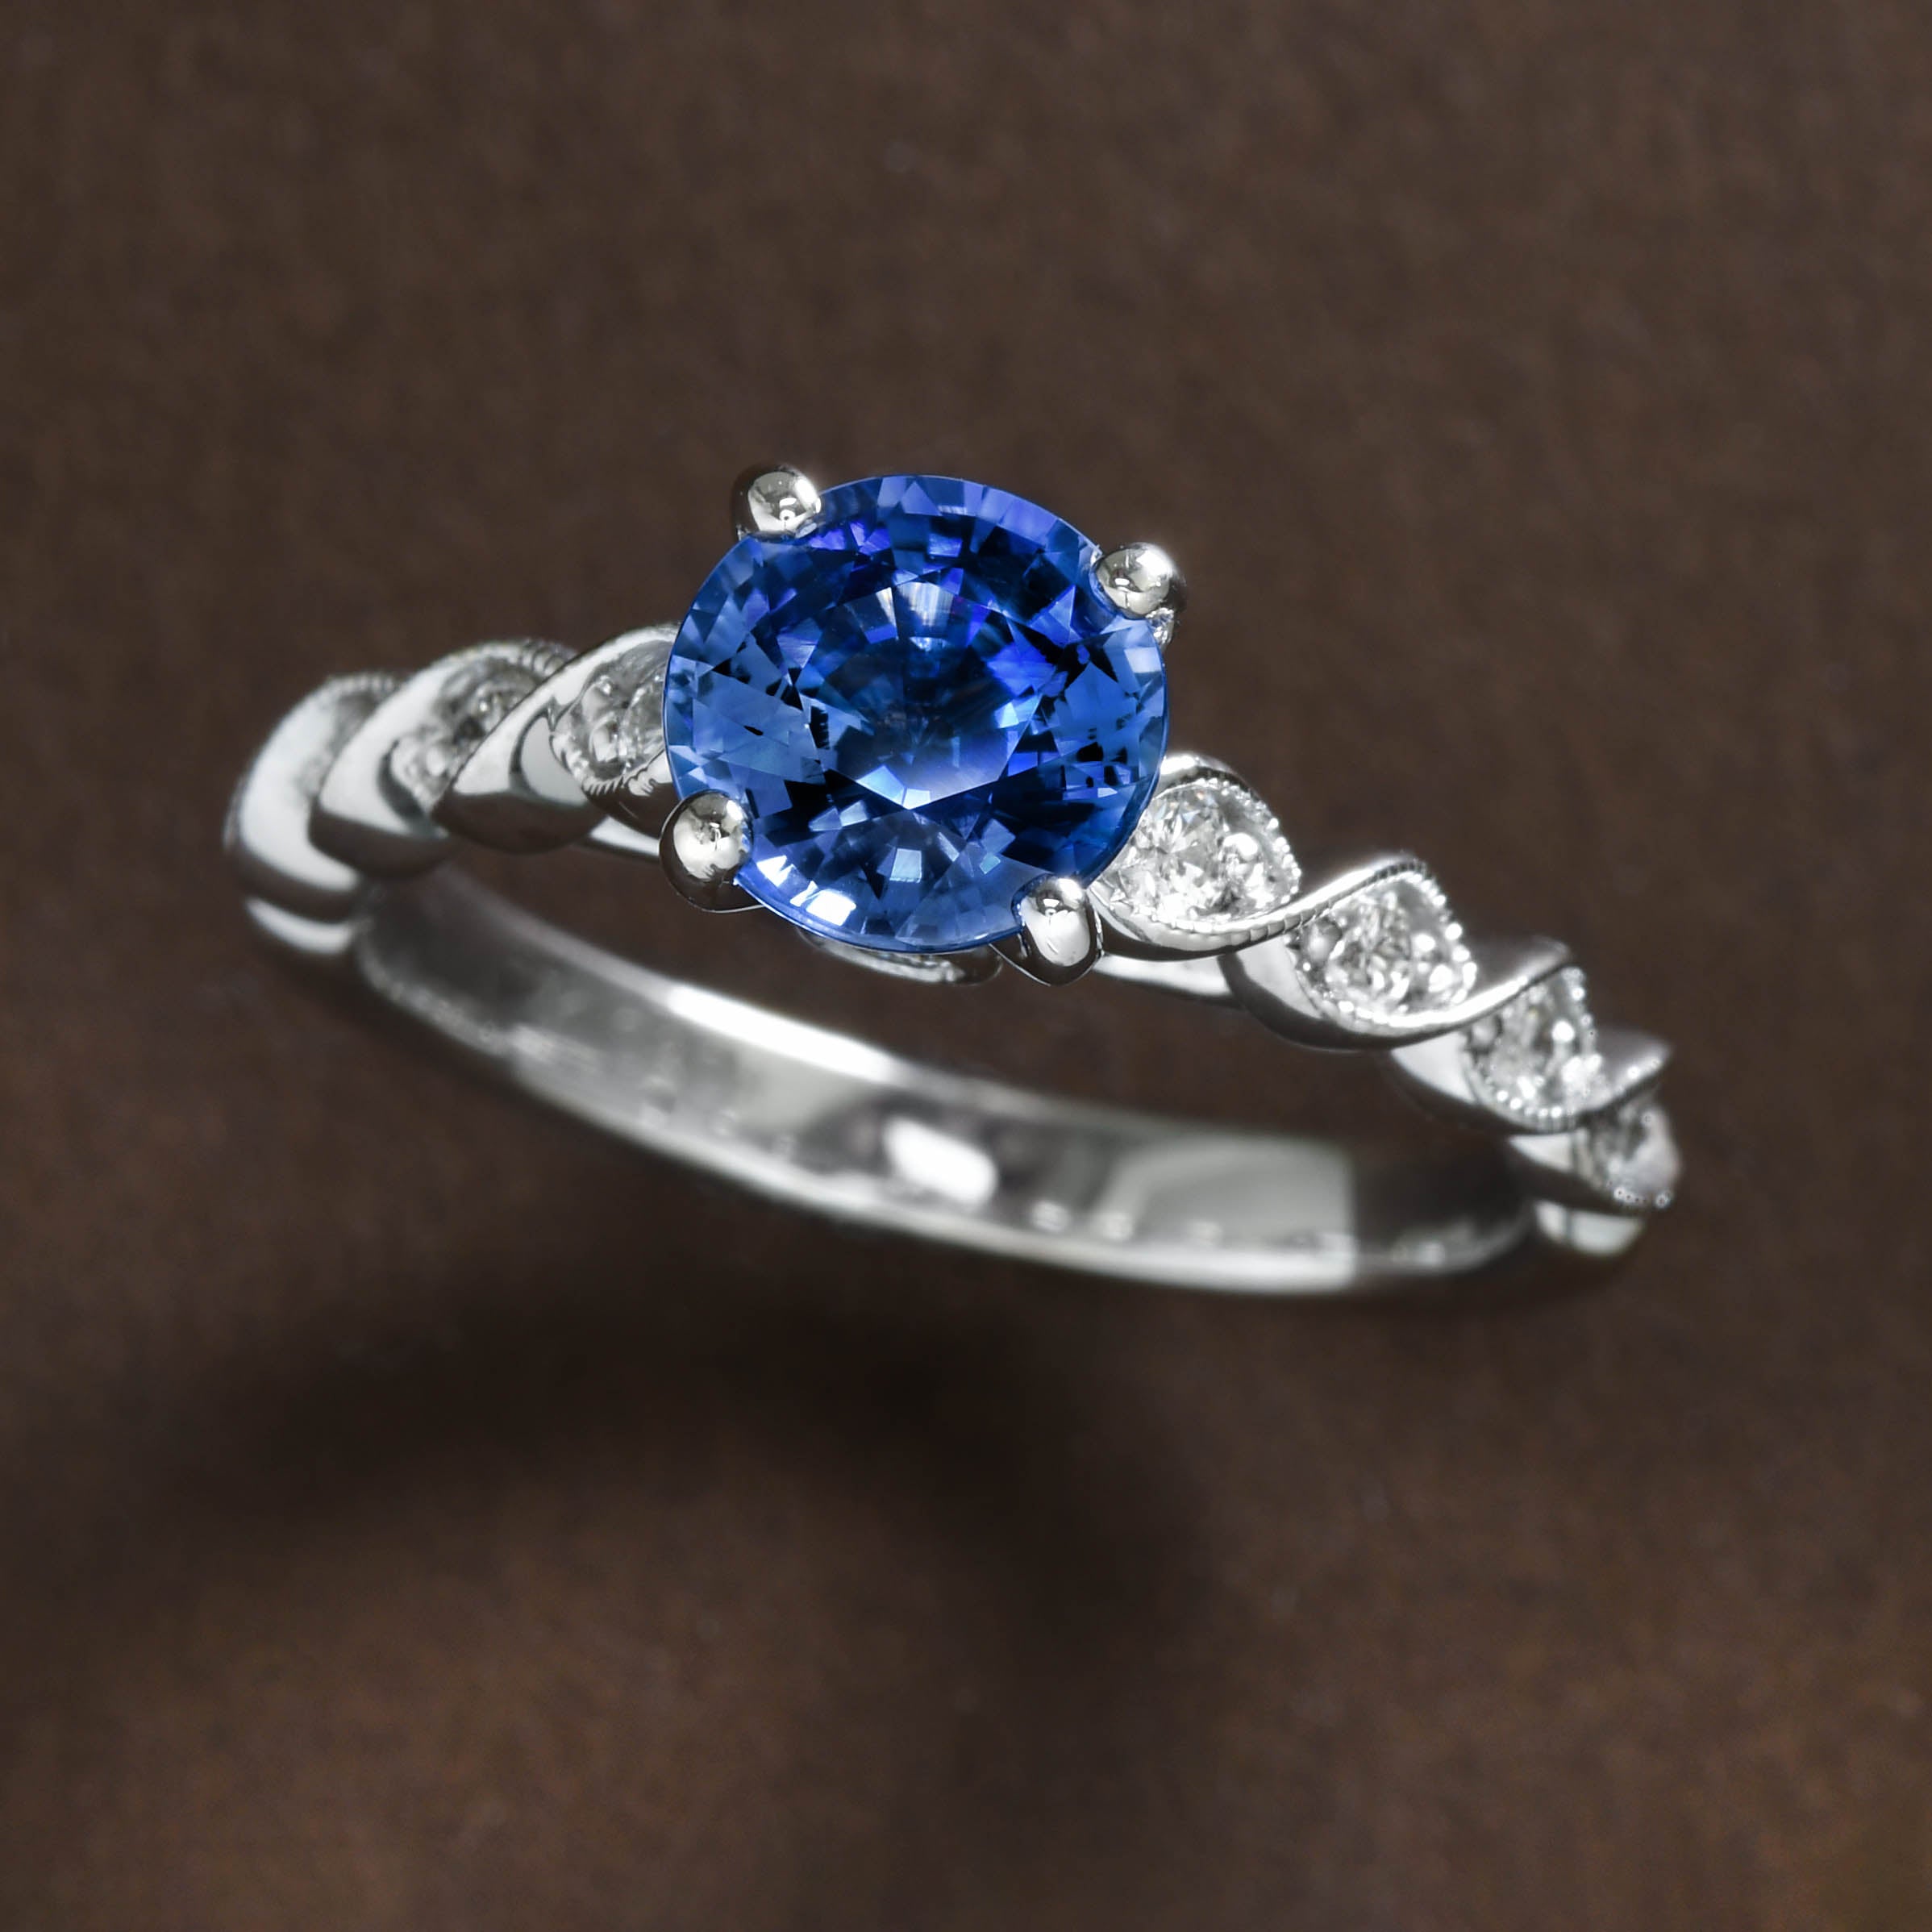 Beautiful Sapphire Ring on Diamond Band - Larc Jewelers